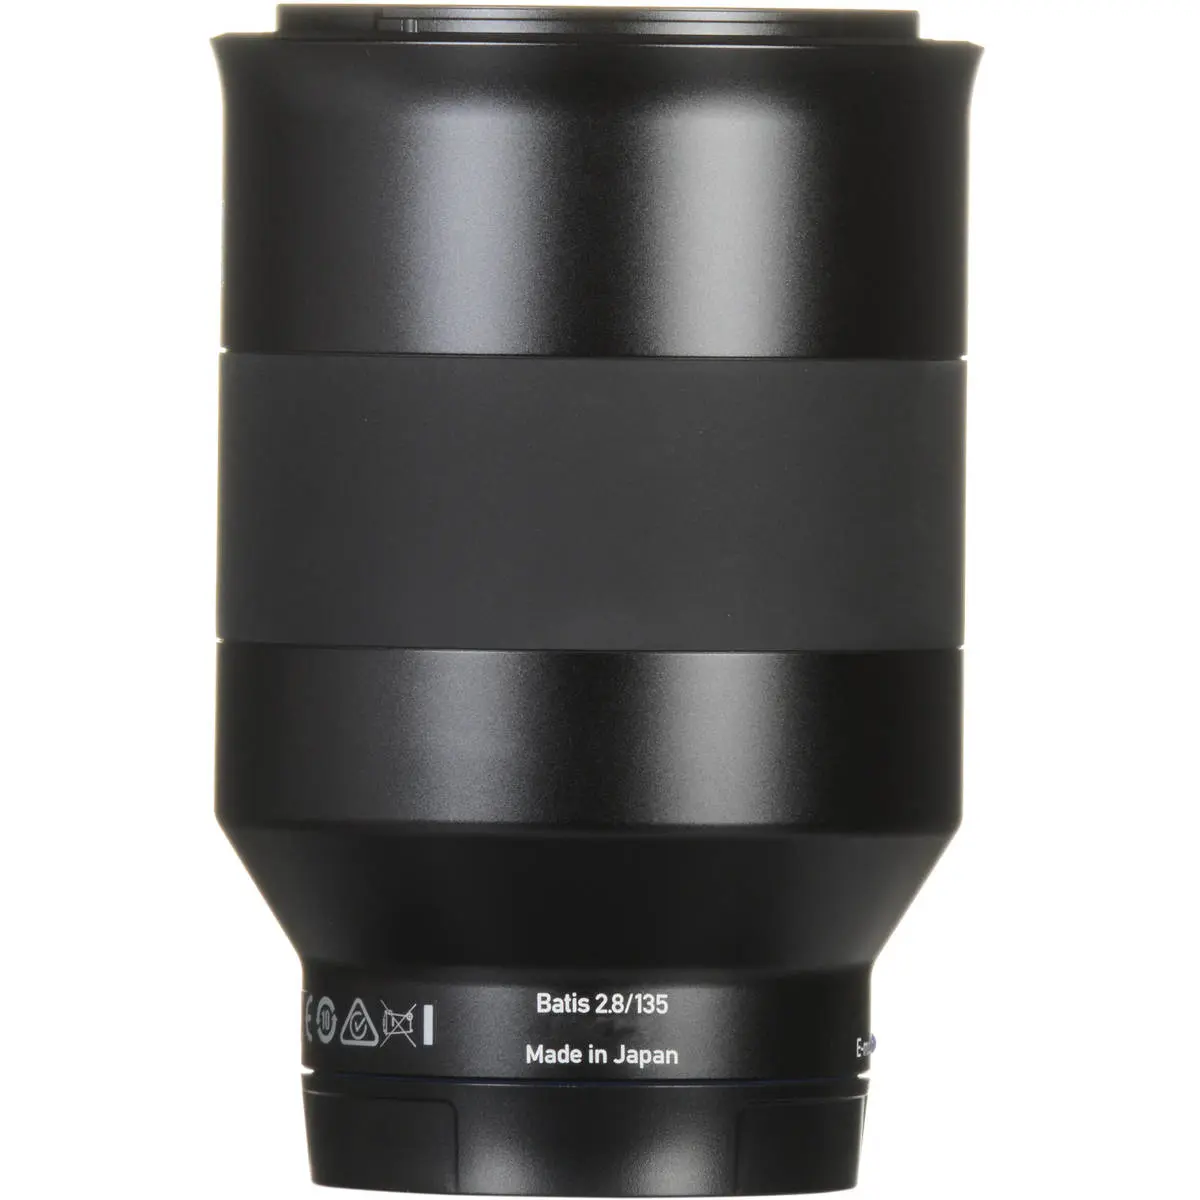 12. Carl Zeiss Batis 135mm F2.8 for Sony E mount Lens